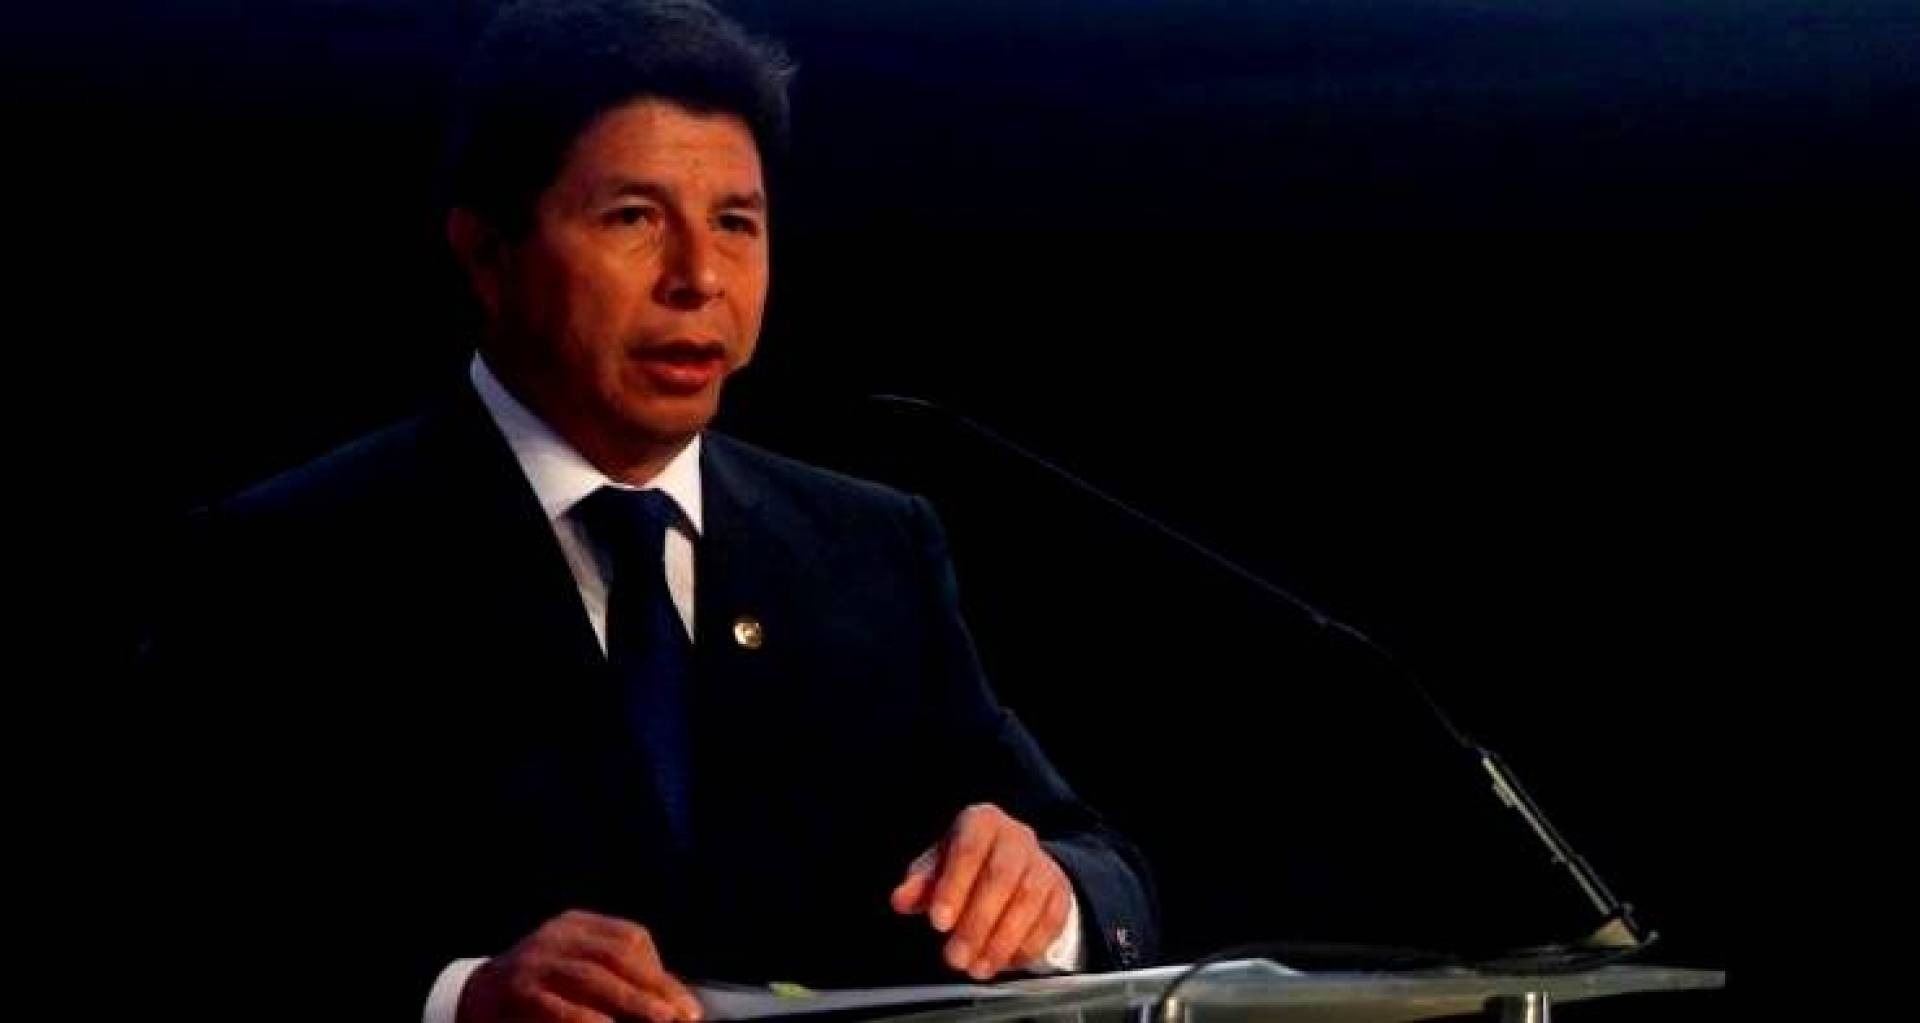 رئيس البيرو المعزول يطلب اللجوء بالمكسيك..